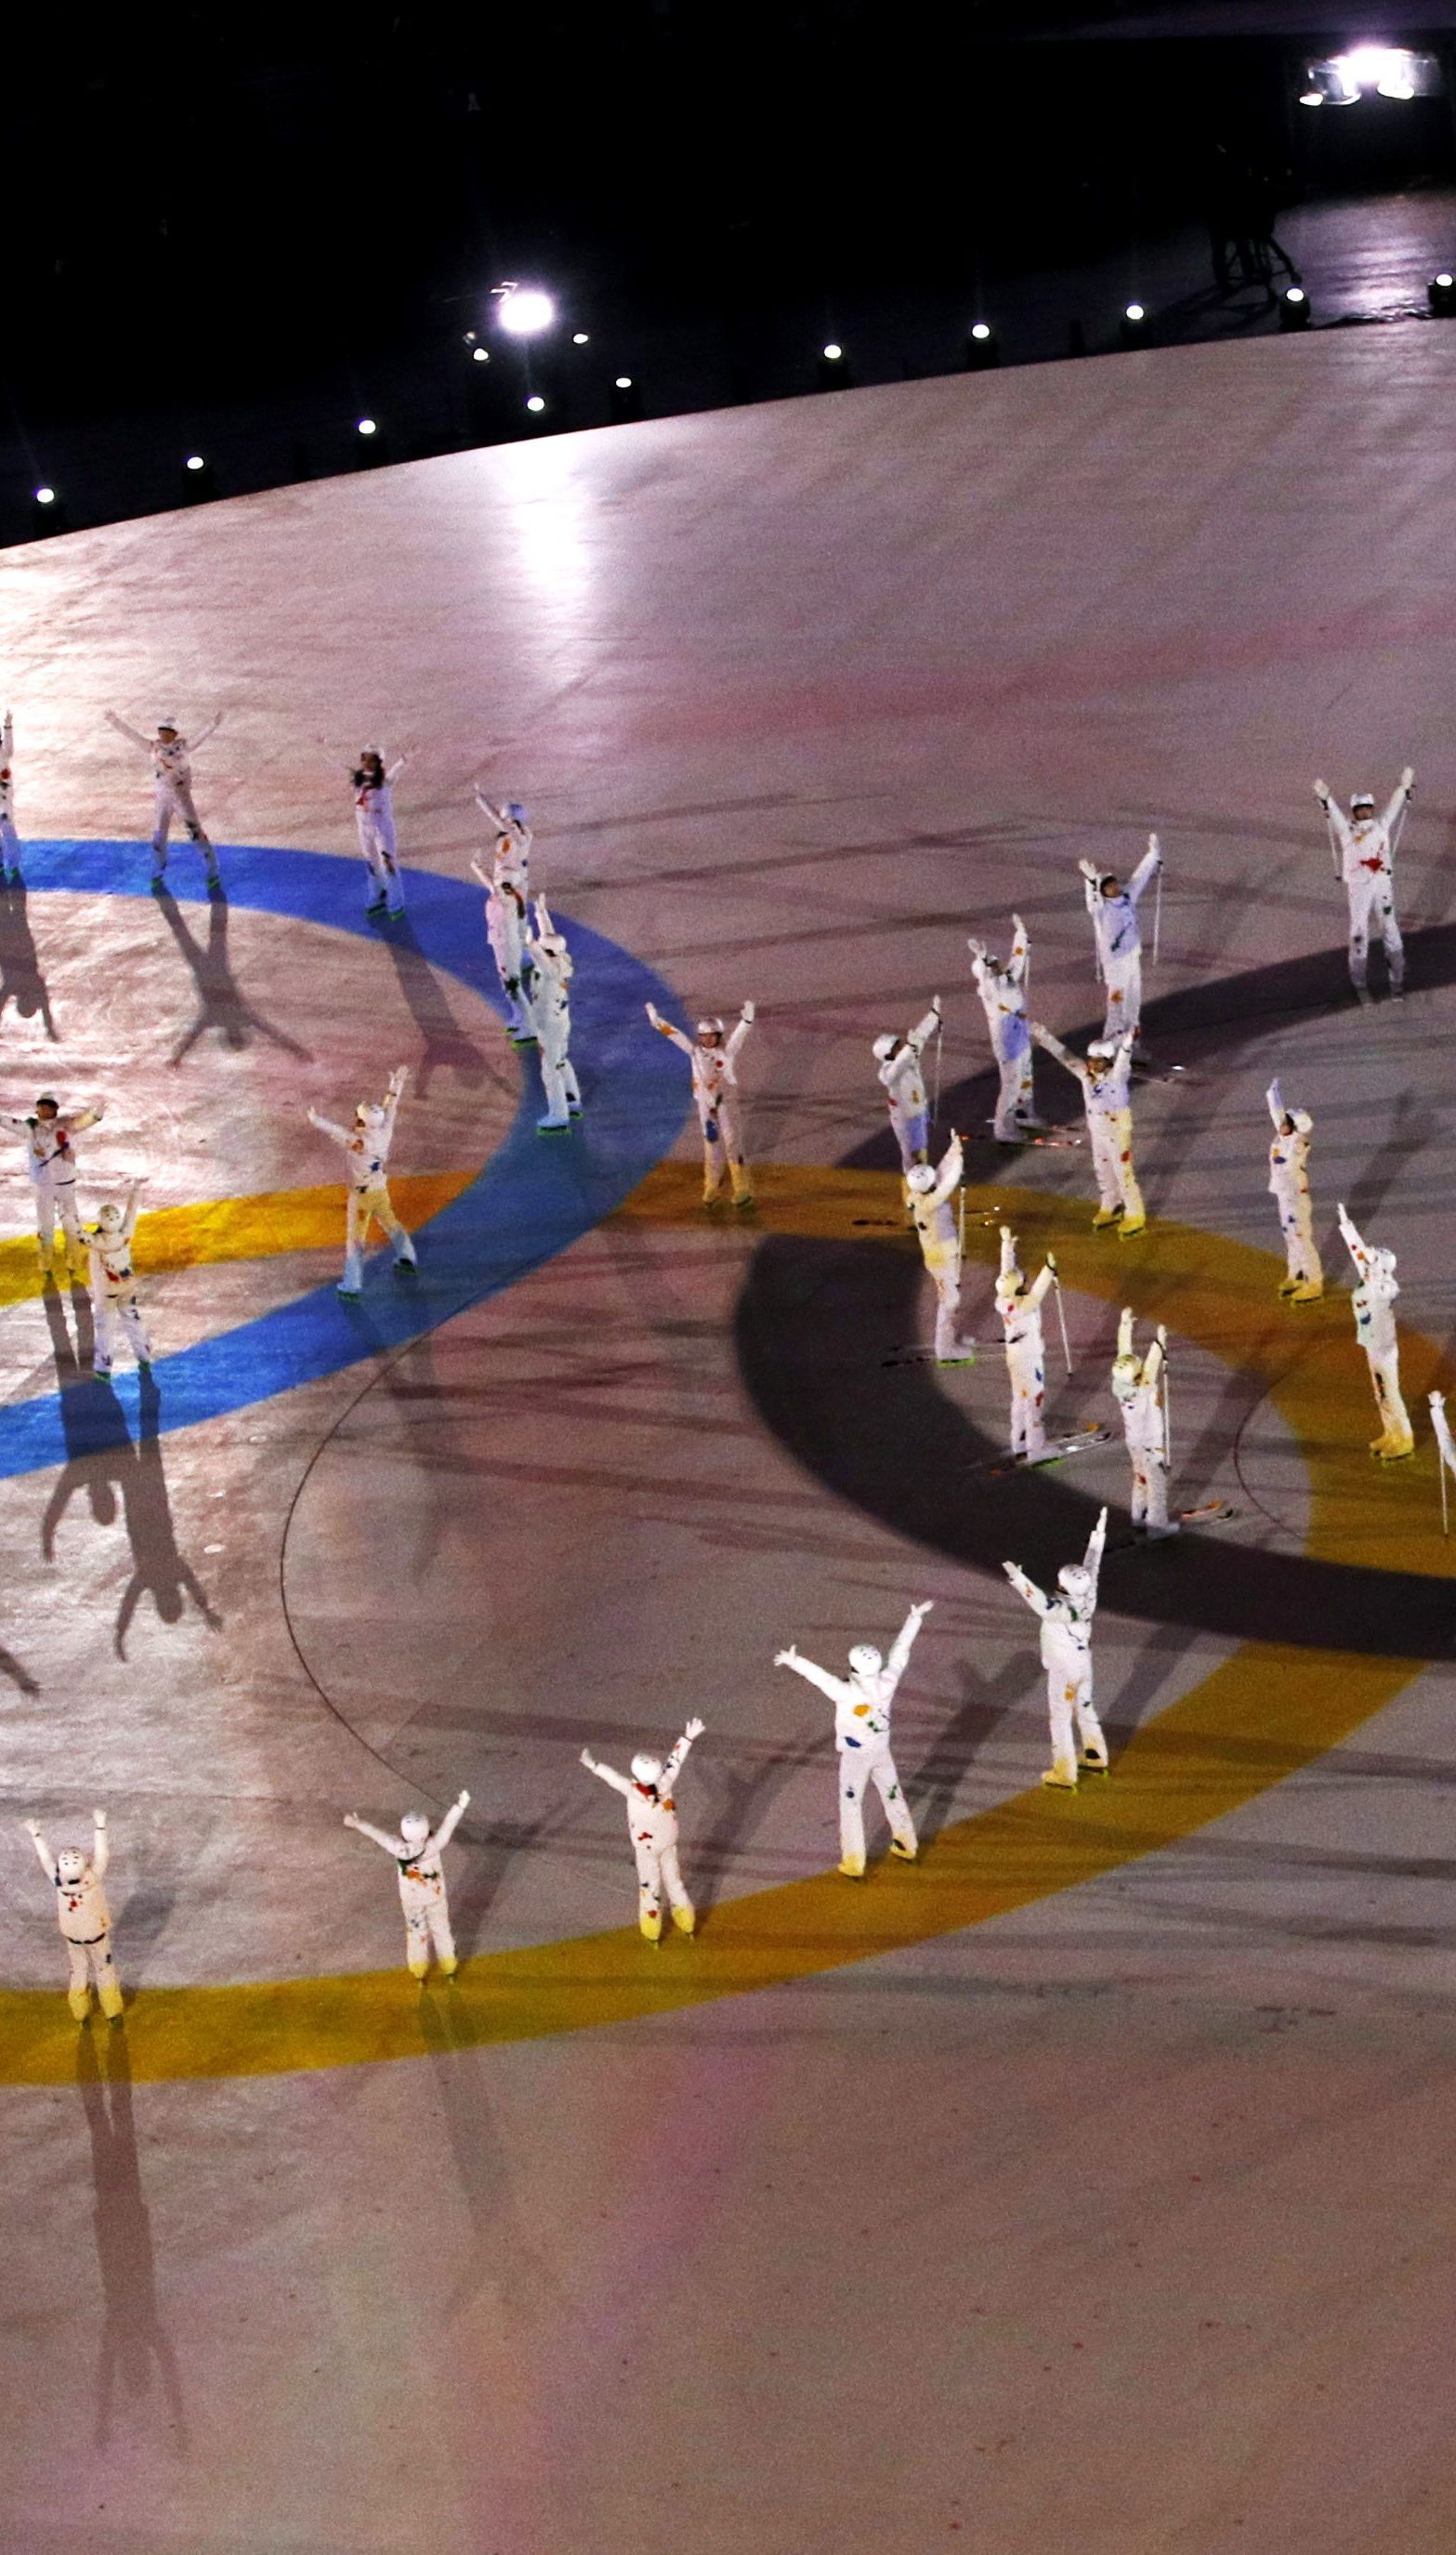 Украина намерена принять Олимпийские игры: когда это может произойти